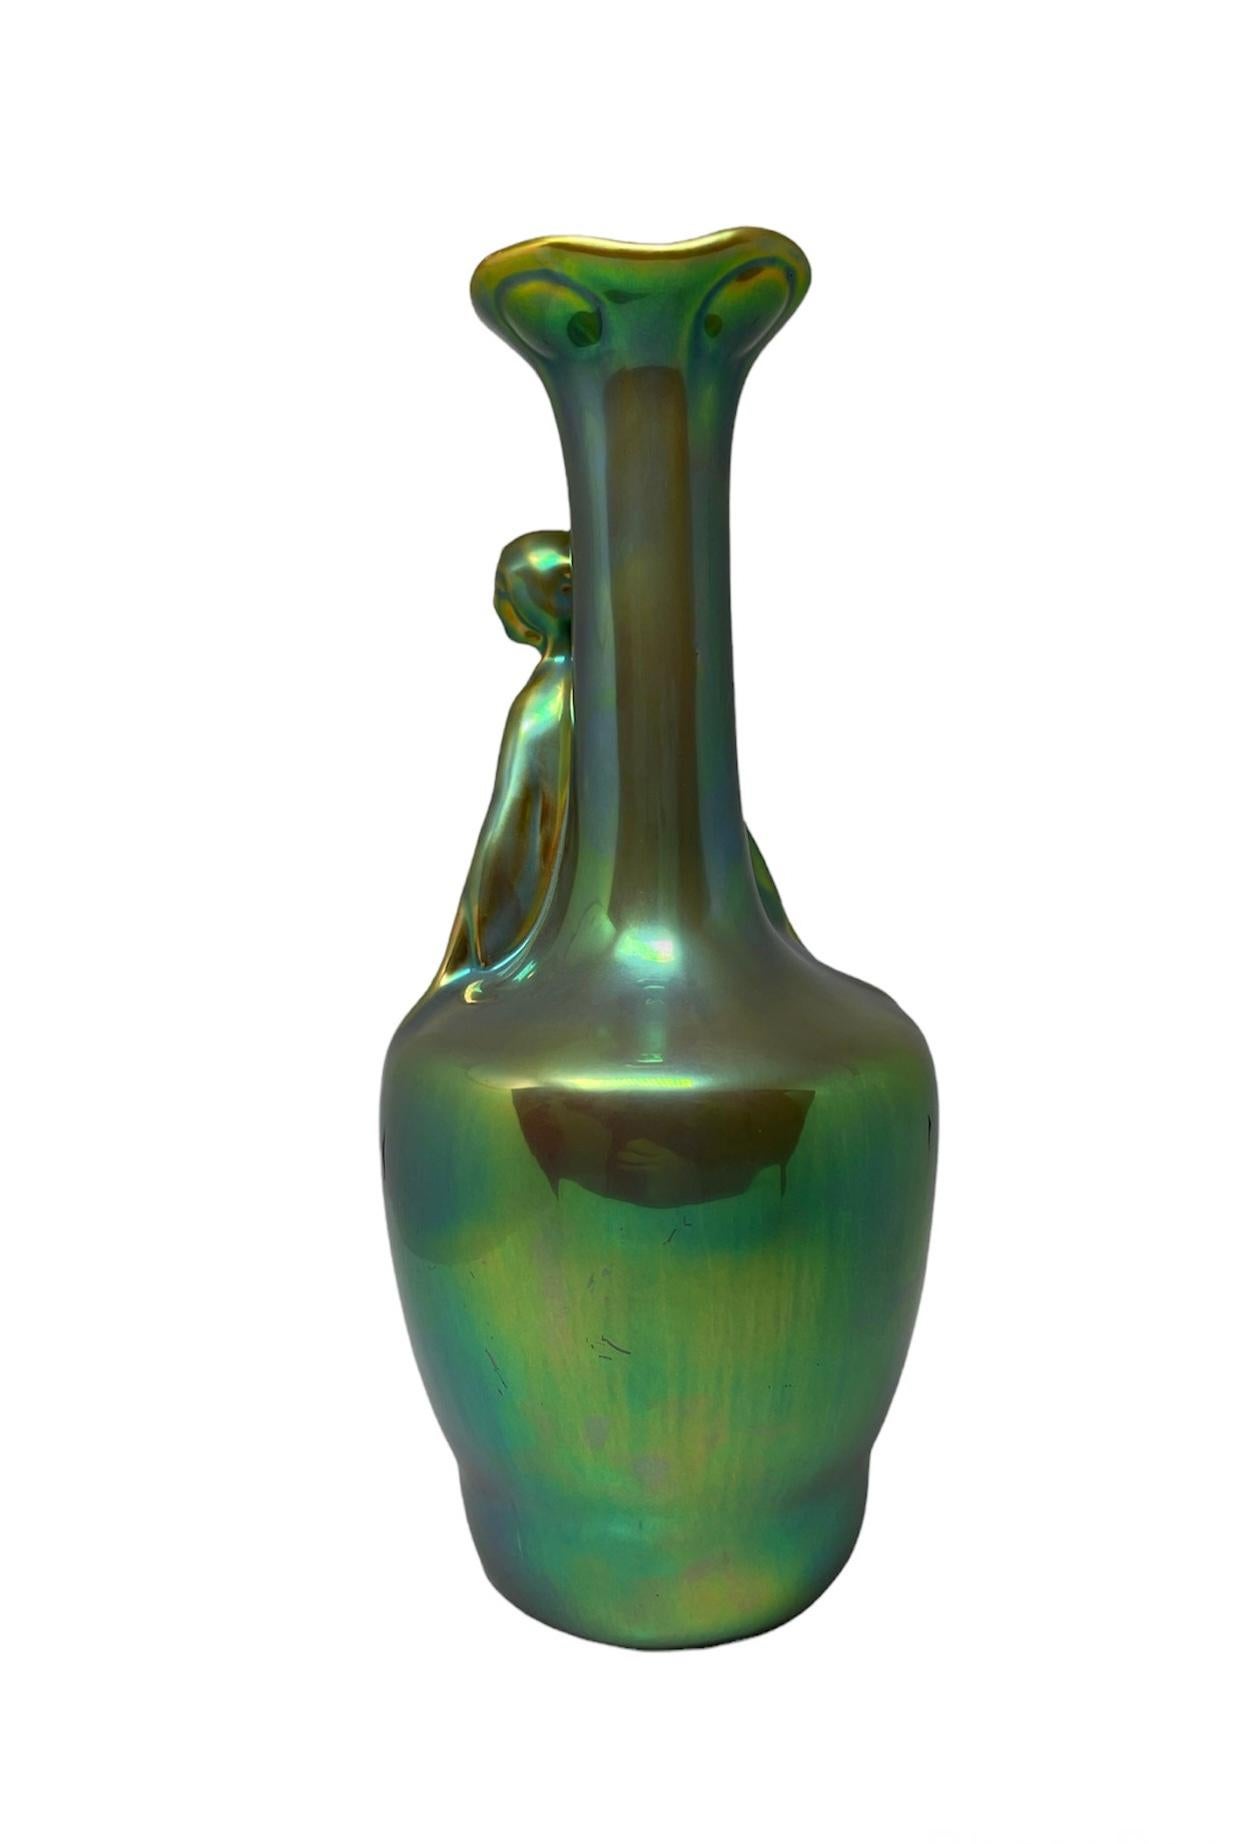 20th Century Art Nouveau Zsolnay Eosin Green Glazed Ceramic Vase